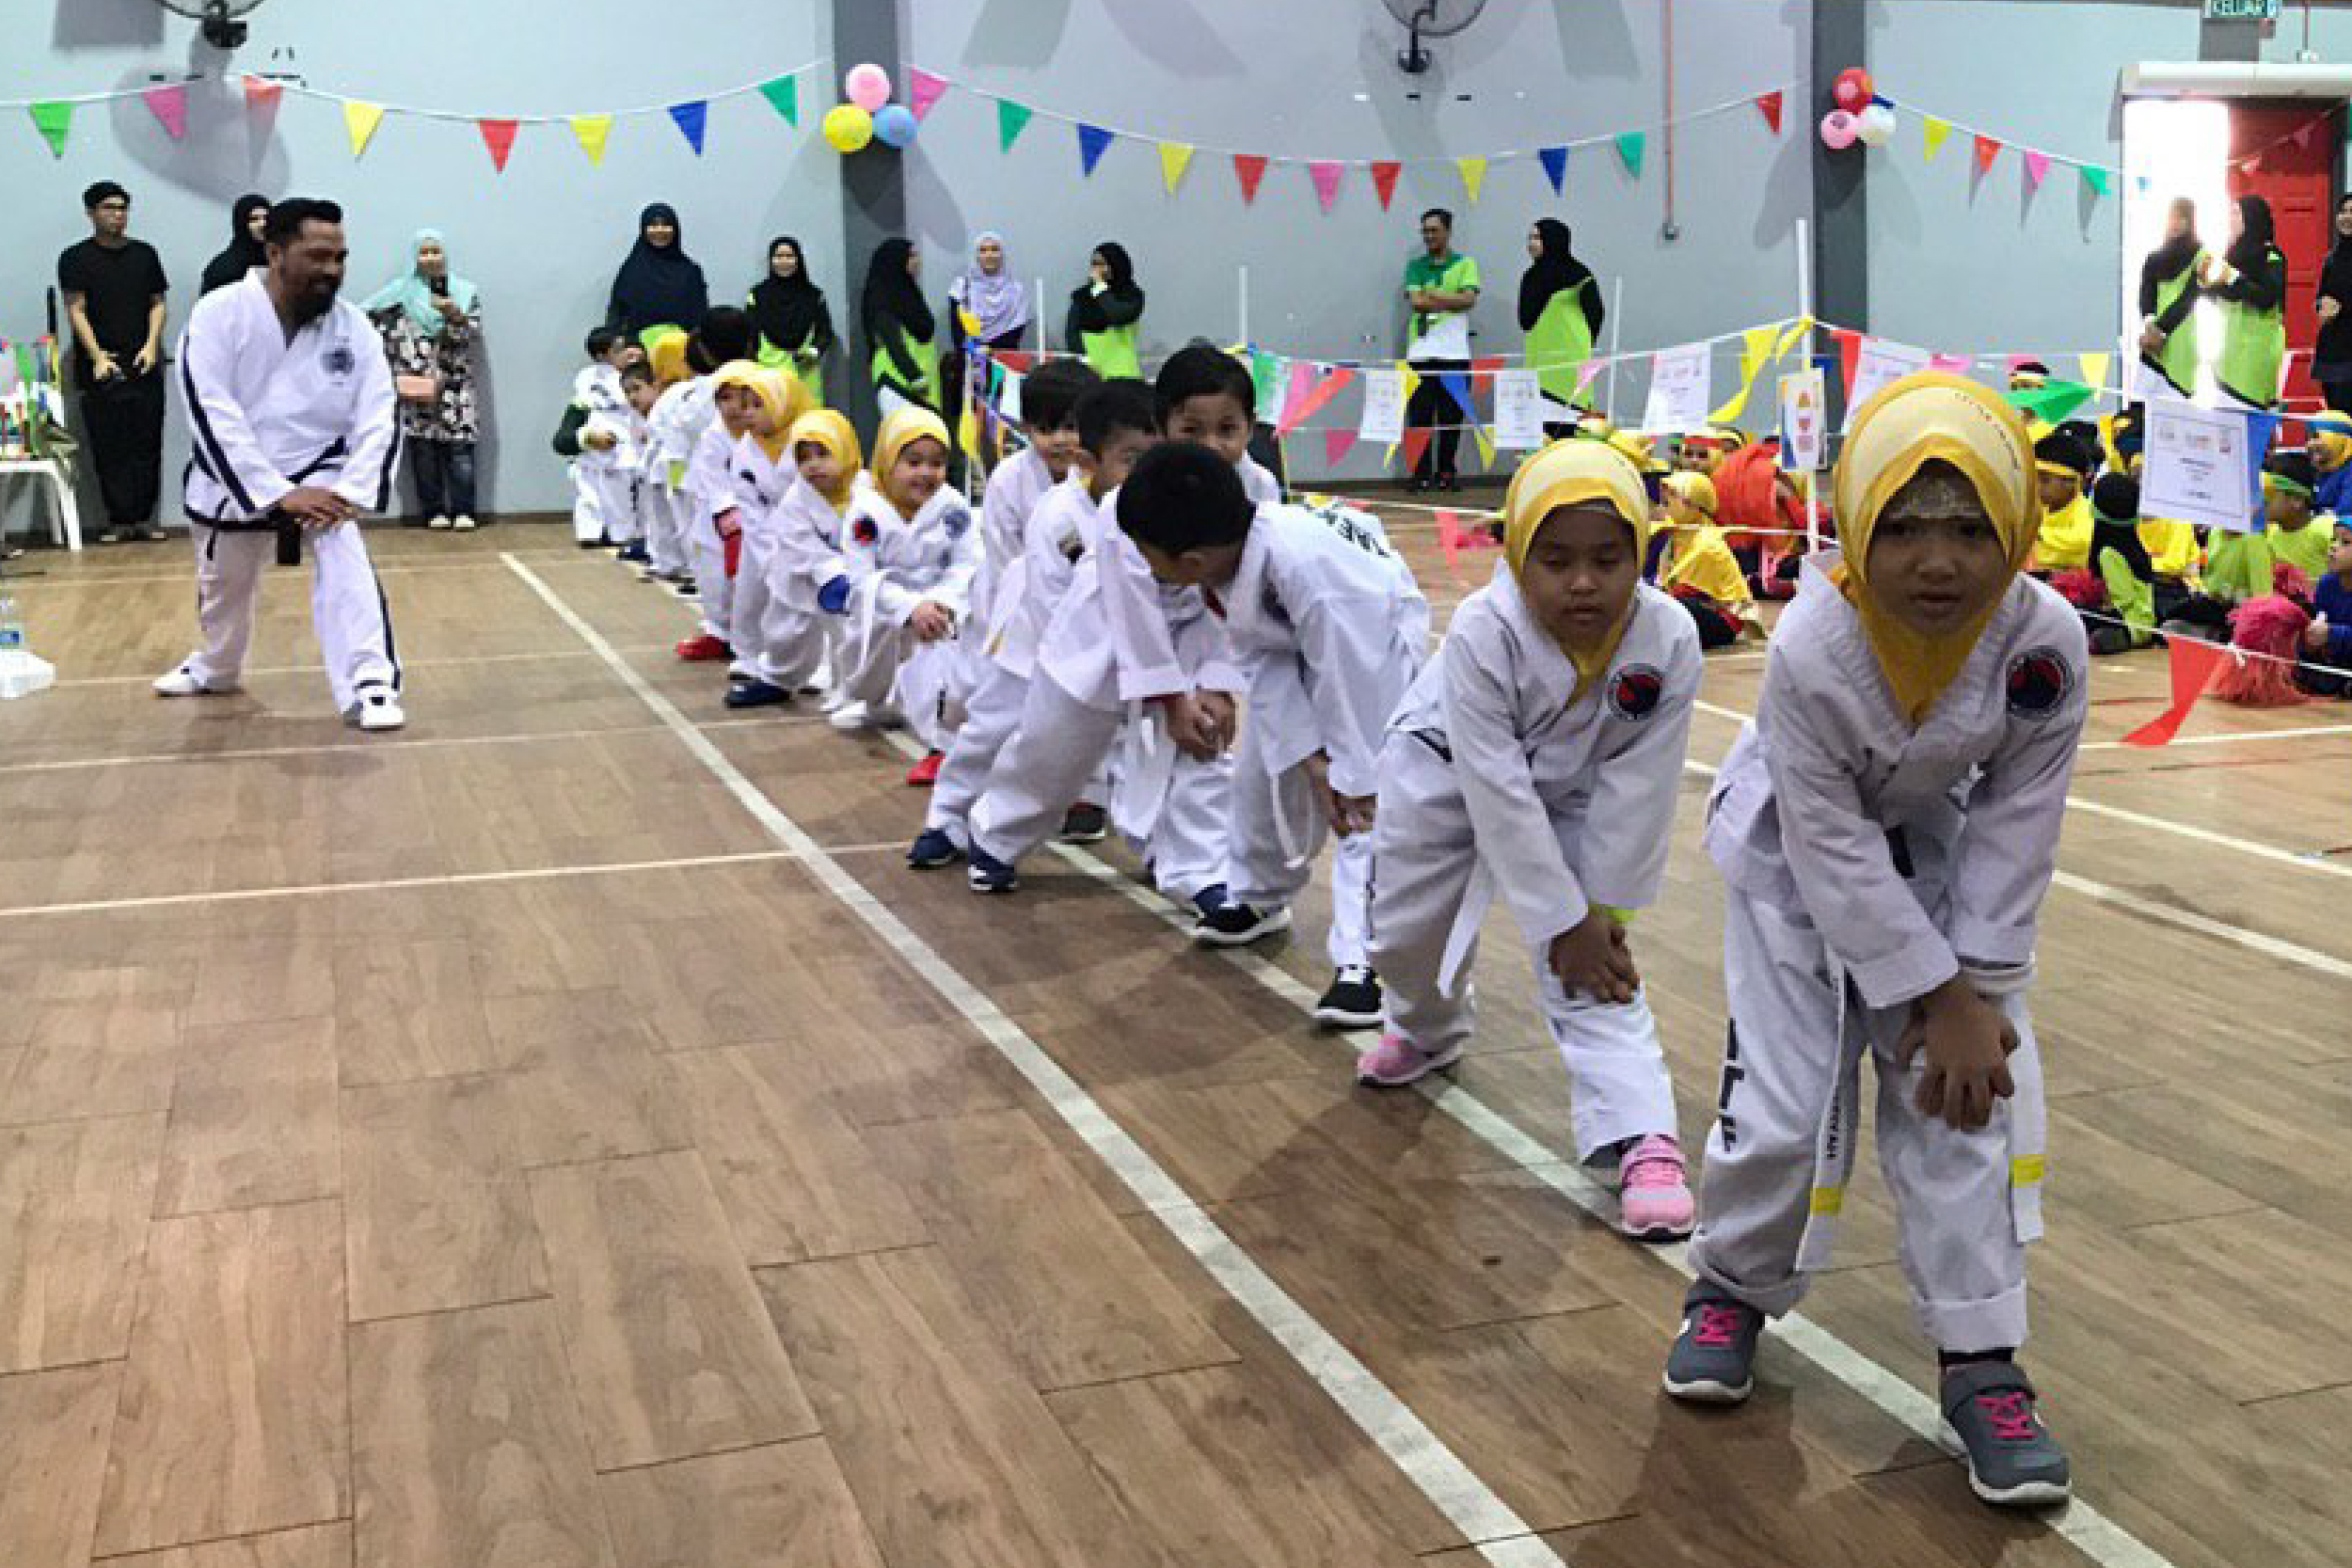 sport day 3 - Little Caliphs Program